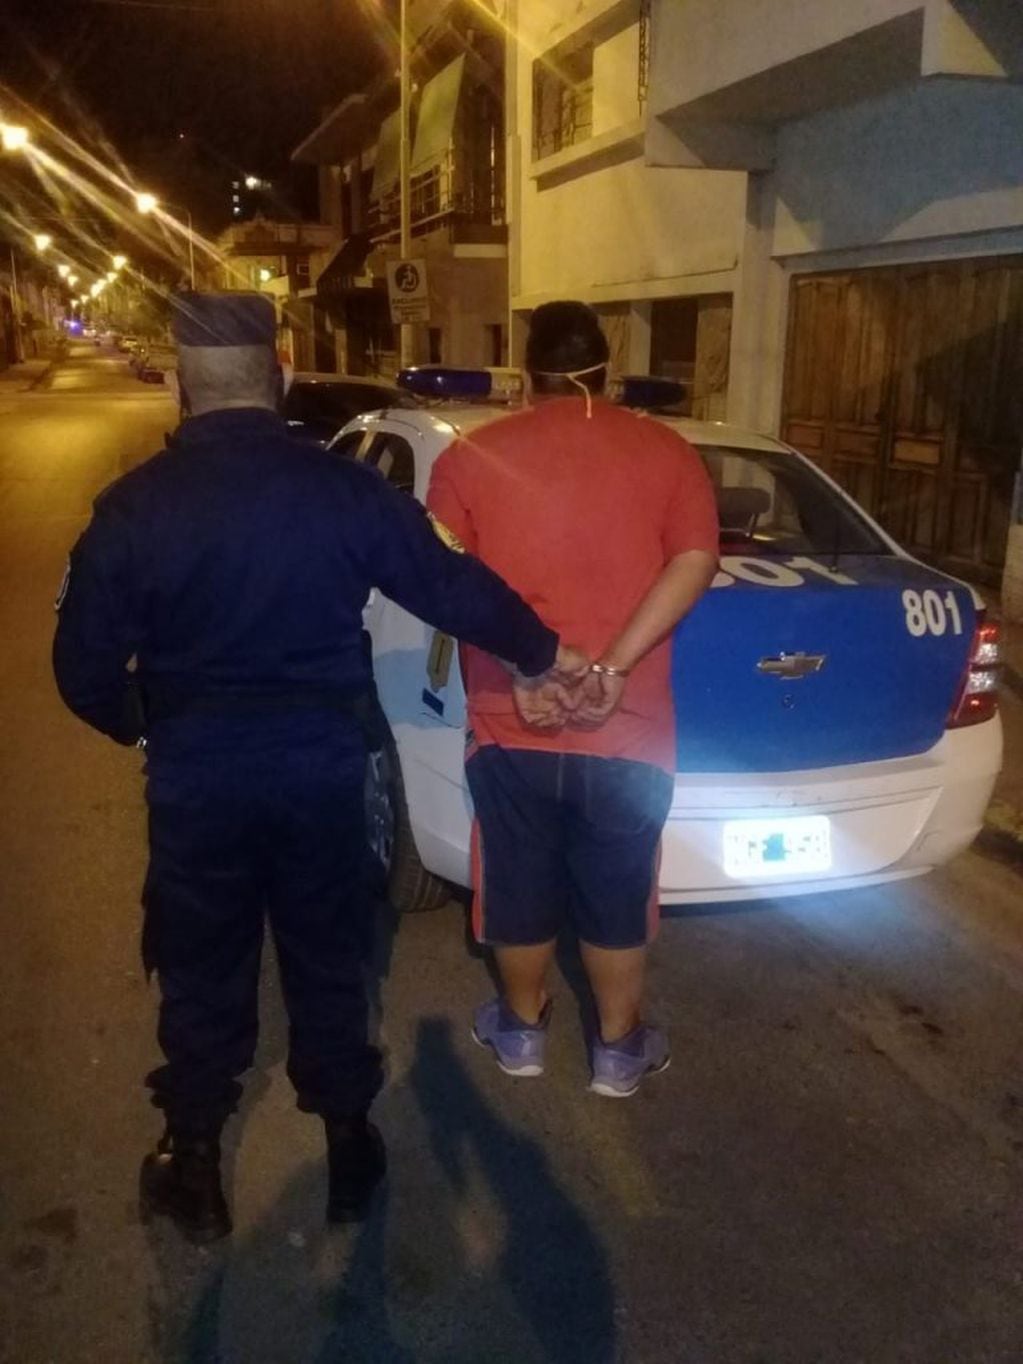 El hombre fue detenido por la policía luego de intentar abrir vehículos en calle 25 de junio.